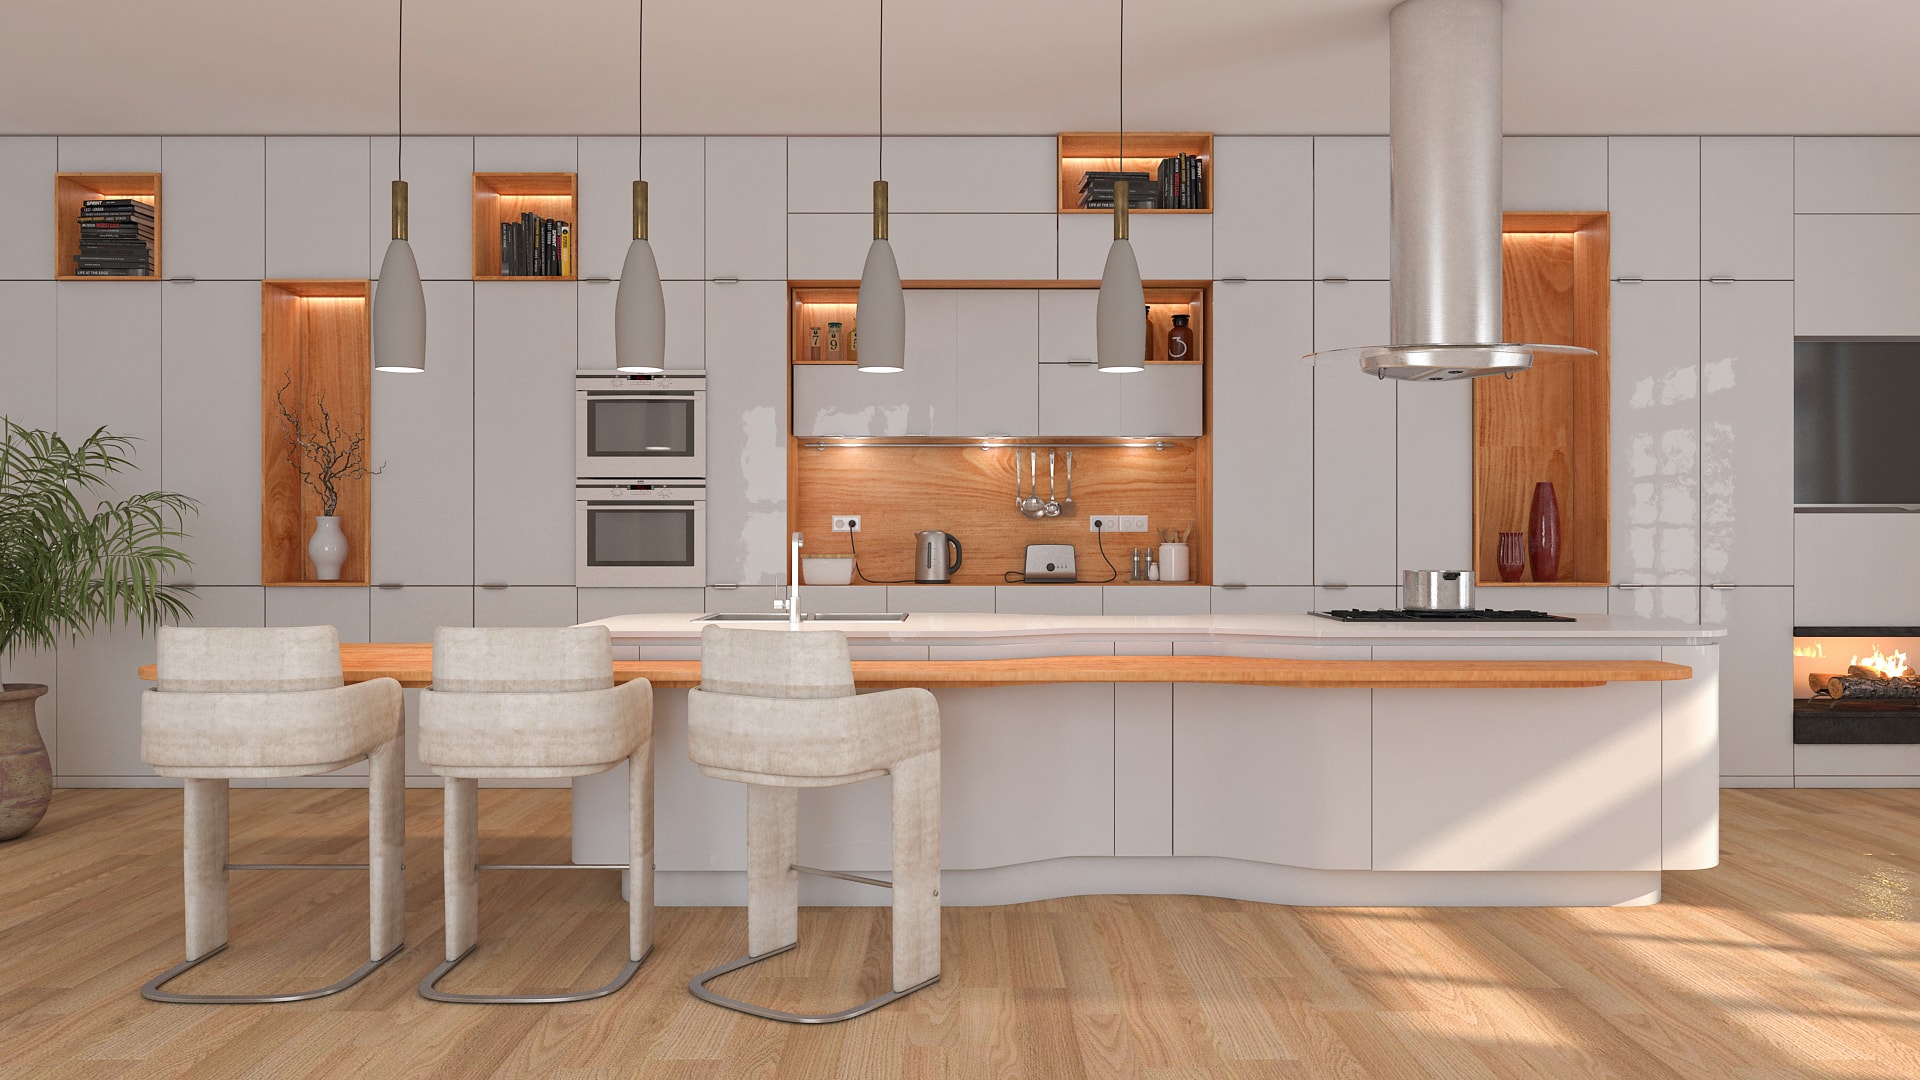 Modern minimal kitchen design